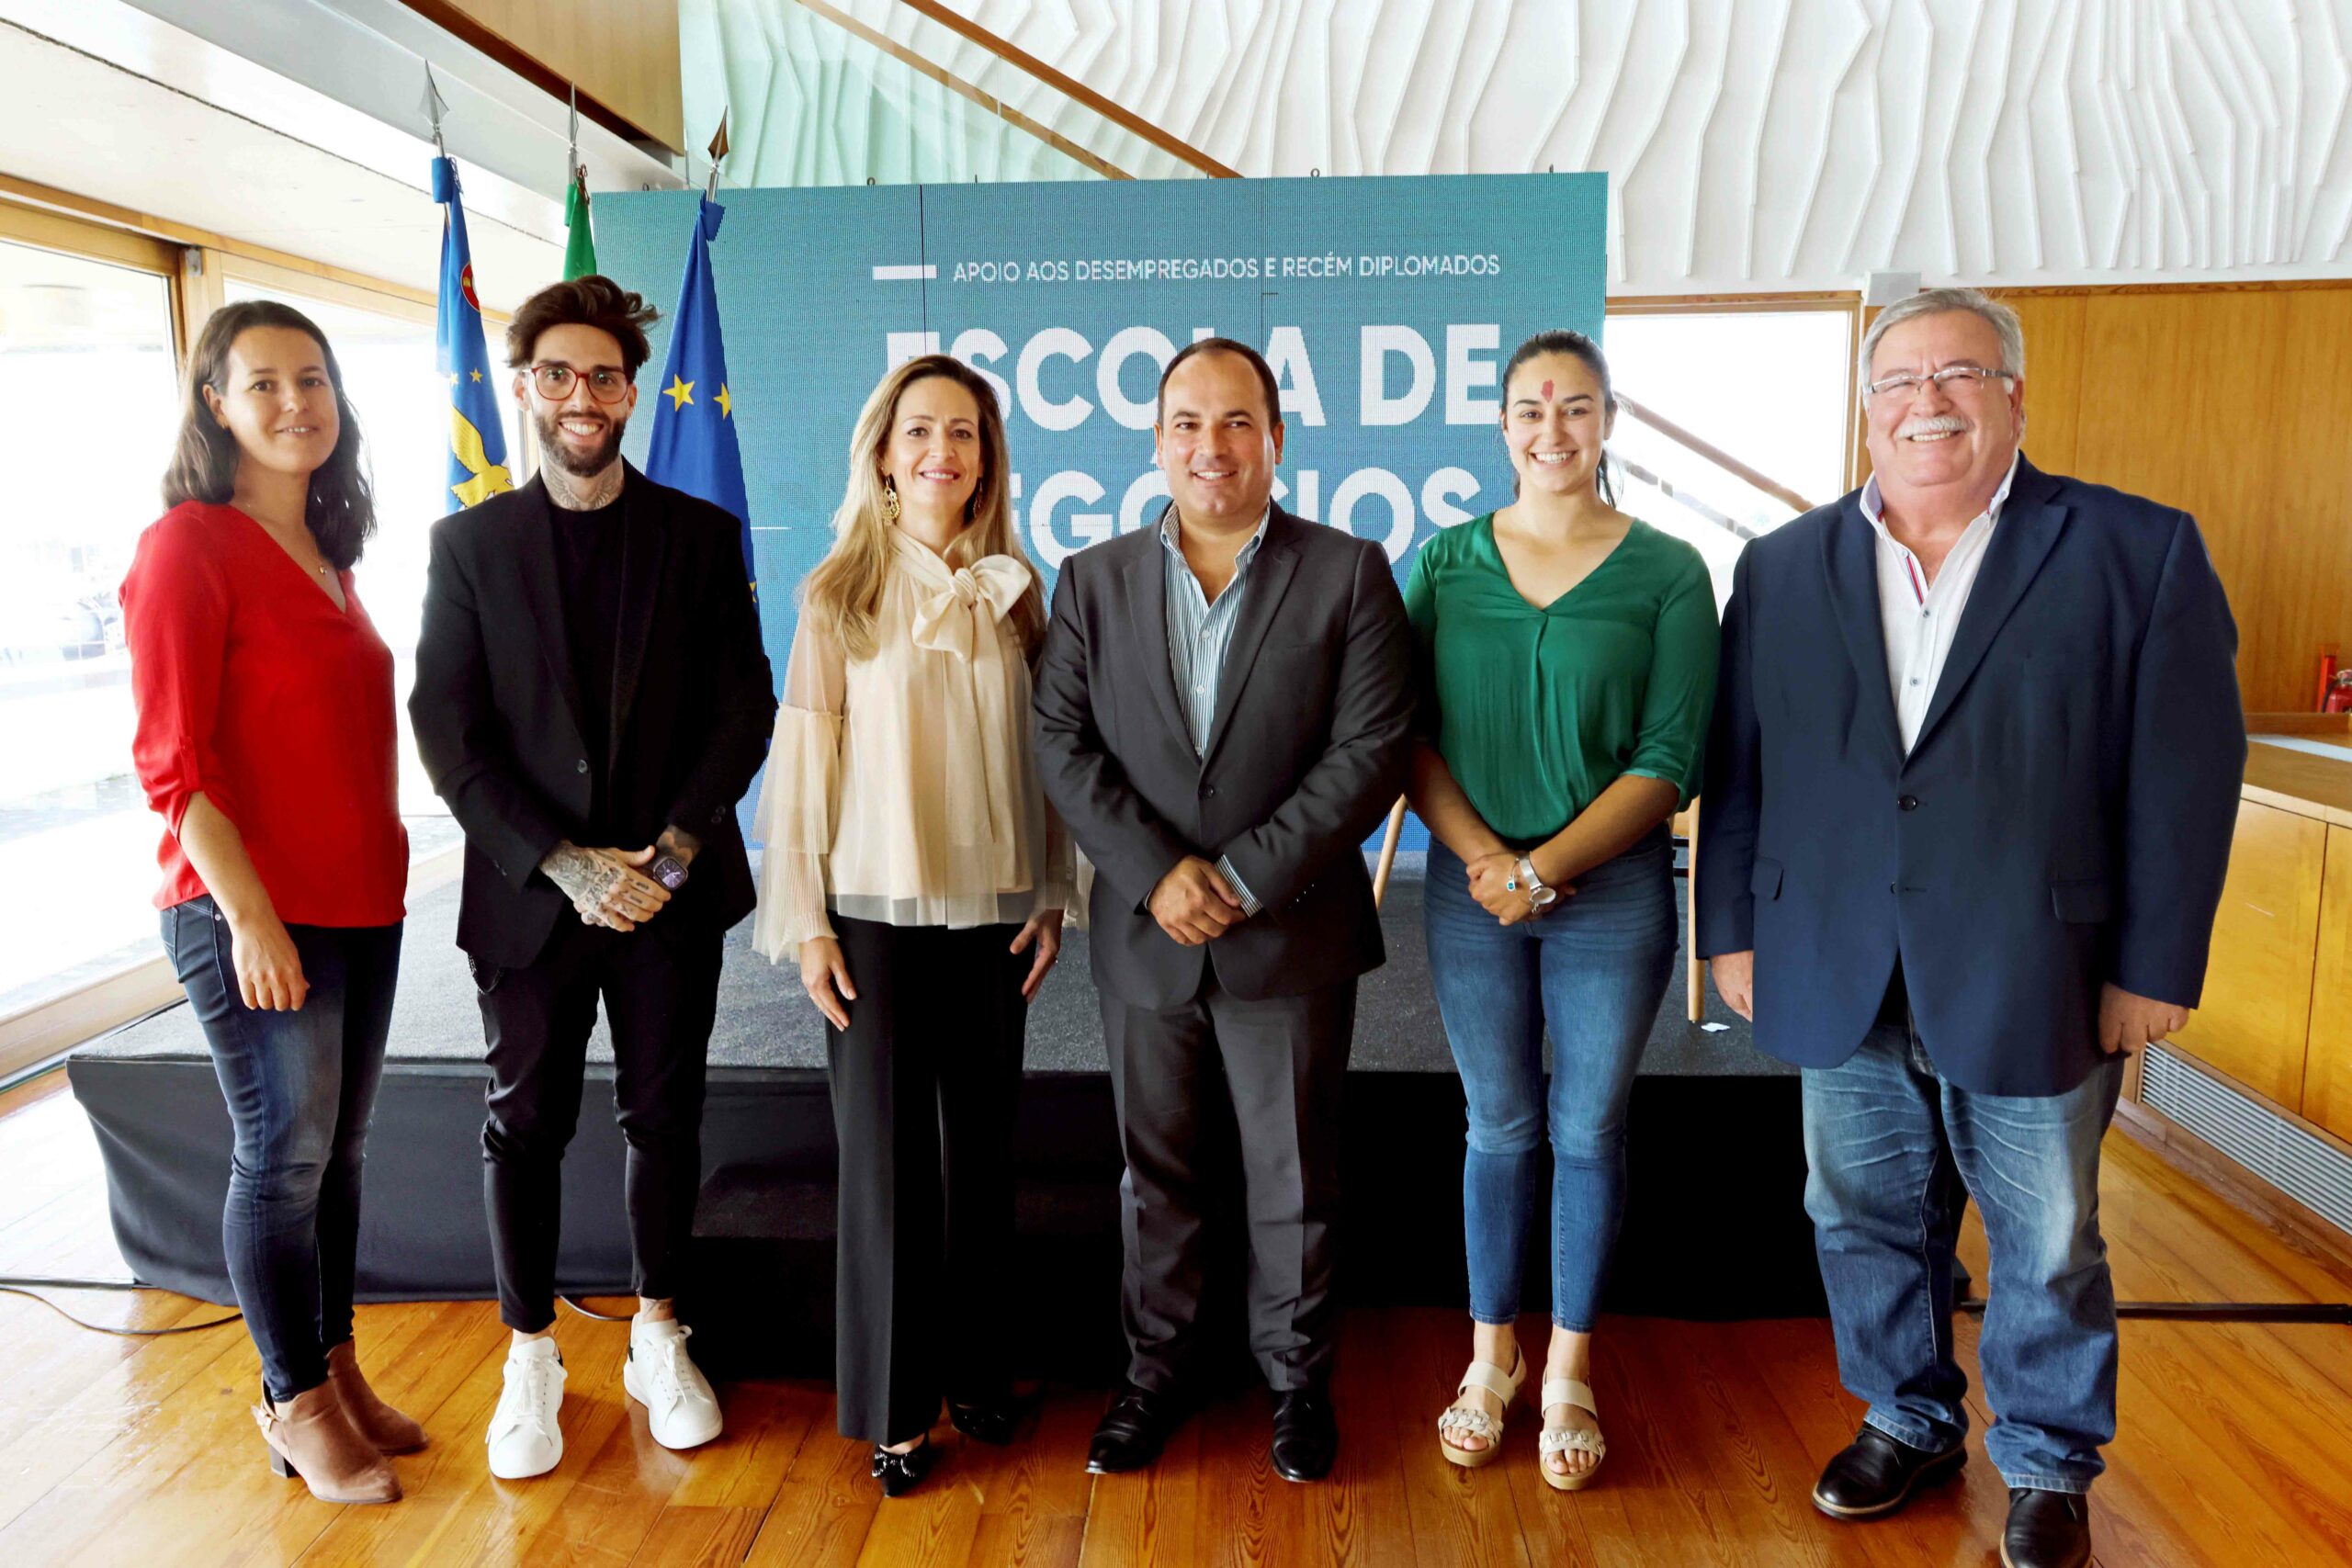 Governo dos Açores cria “Escola de Negócios” para apoiar empreendedorismo, criação do próprio emprego e desenvolvimento local